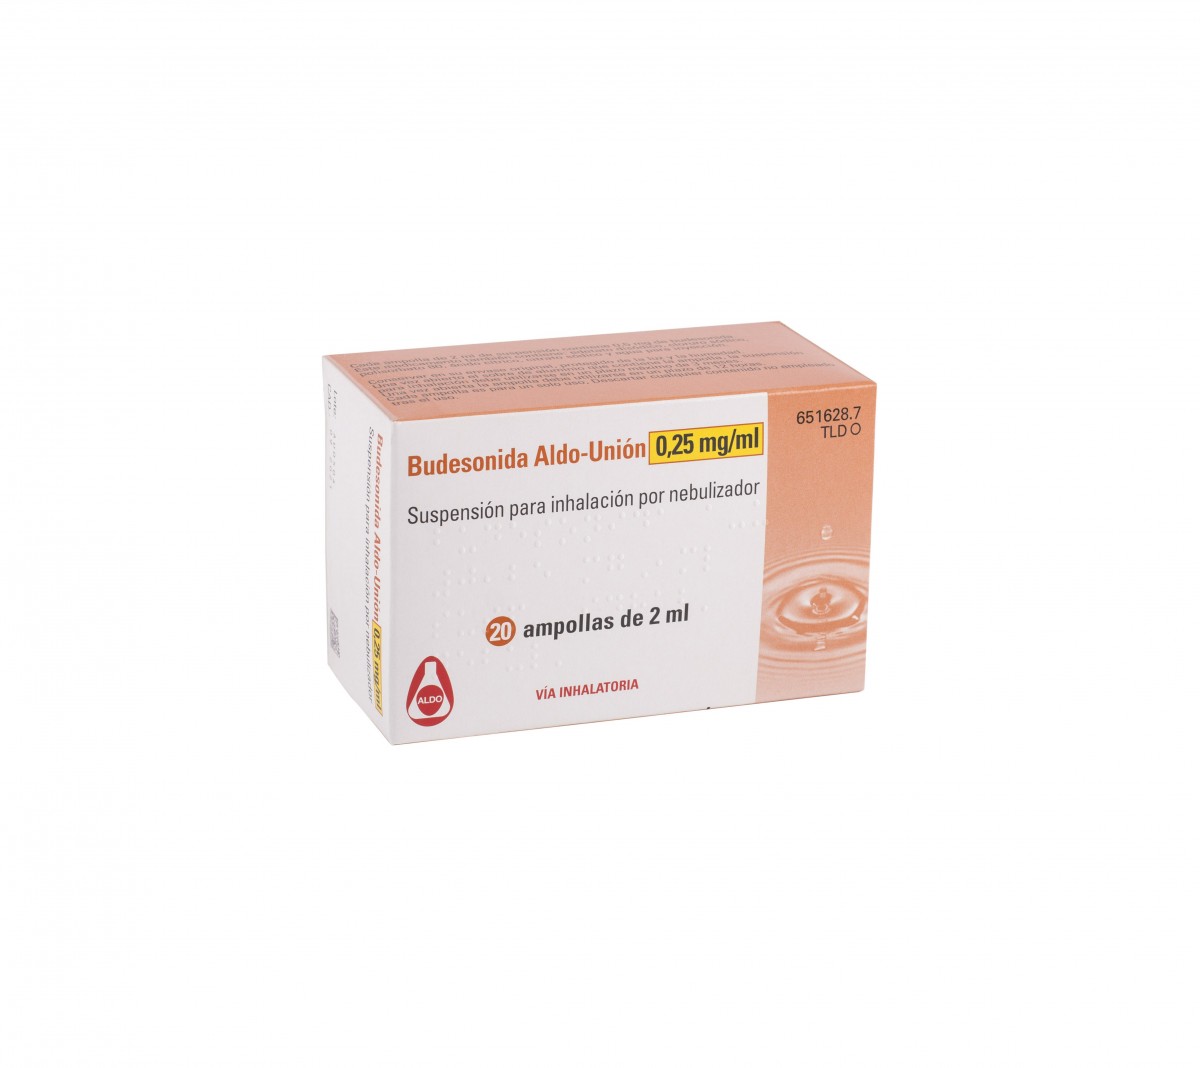 BUDESONIDA ALDO-UNION 0,25 mg/ml SUSPENSION PARA INHALACION POR NEBULIZADOR , 20 ampollas de 2 ml fotografía del envase.